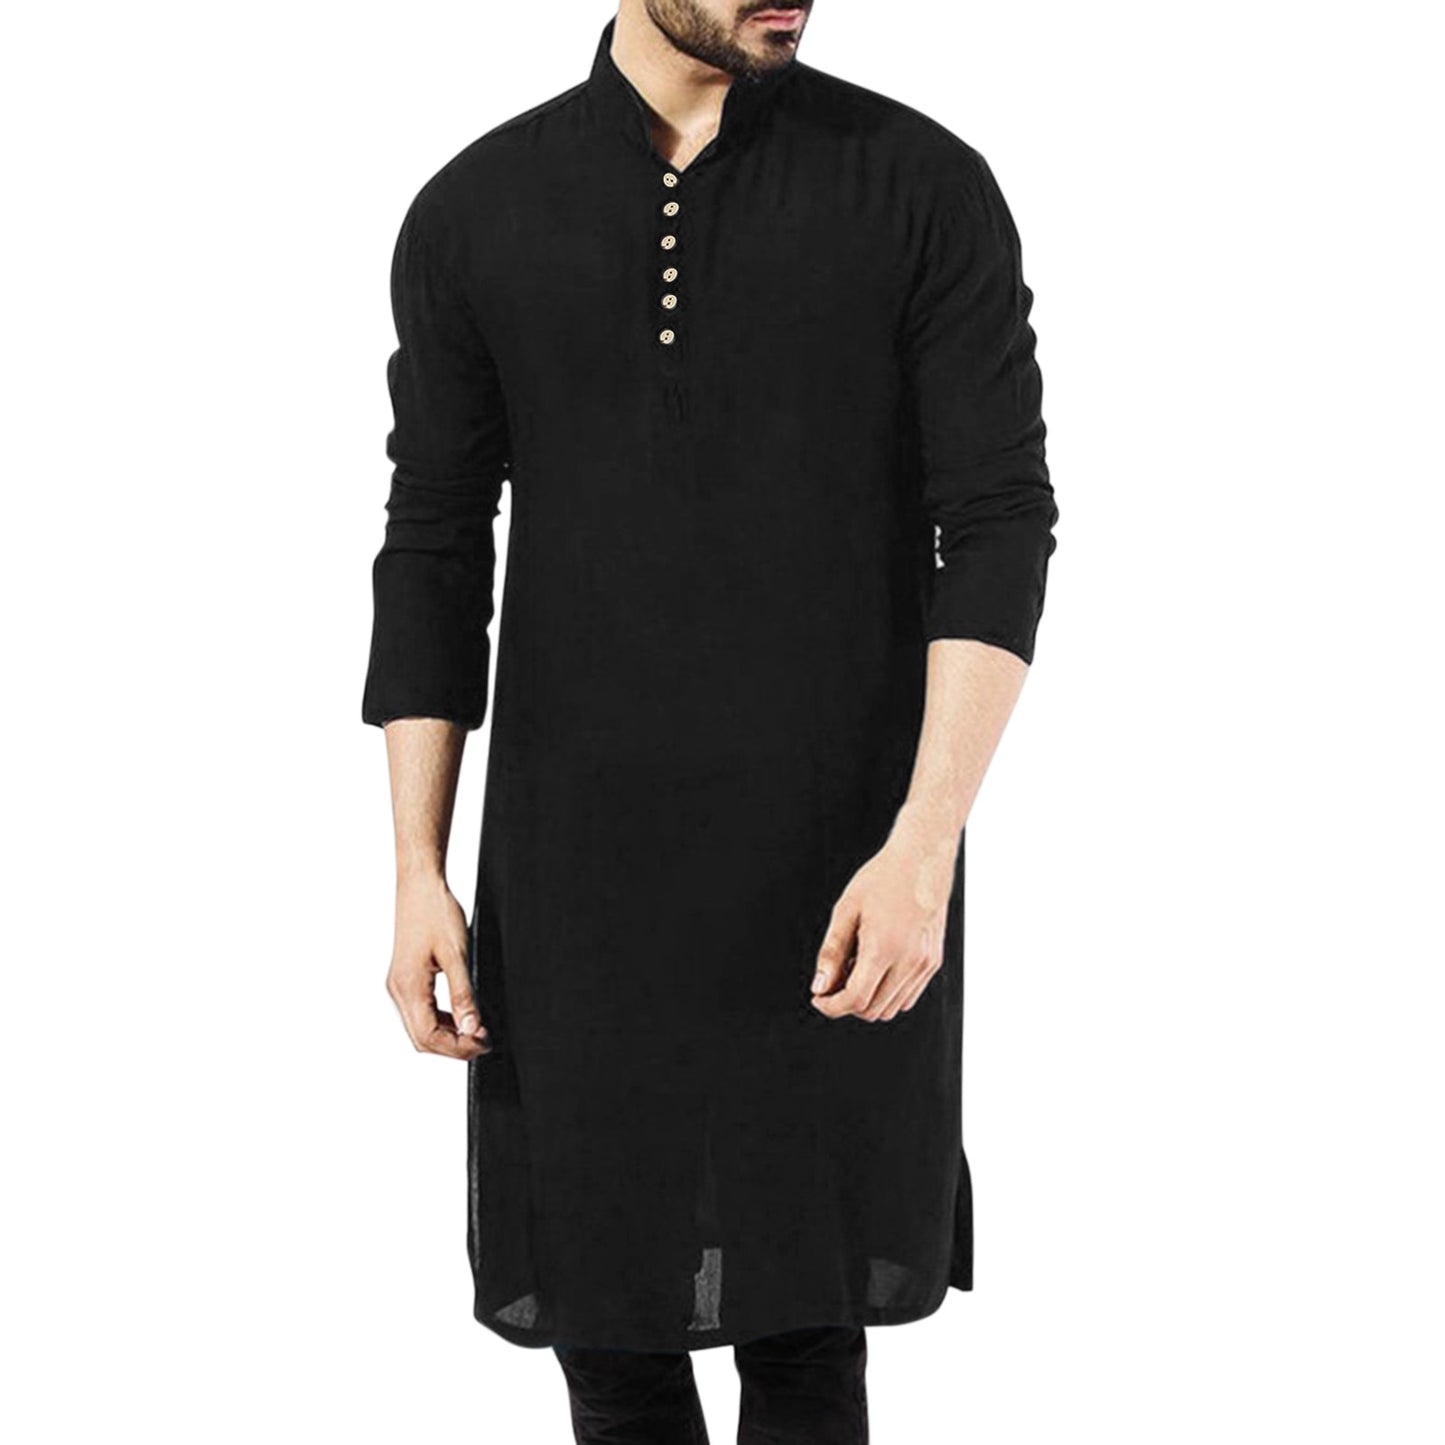 Casual Long Sleeve Salwar Kameez Shirt with Button